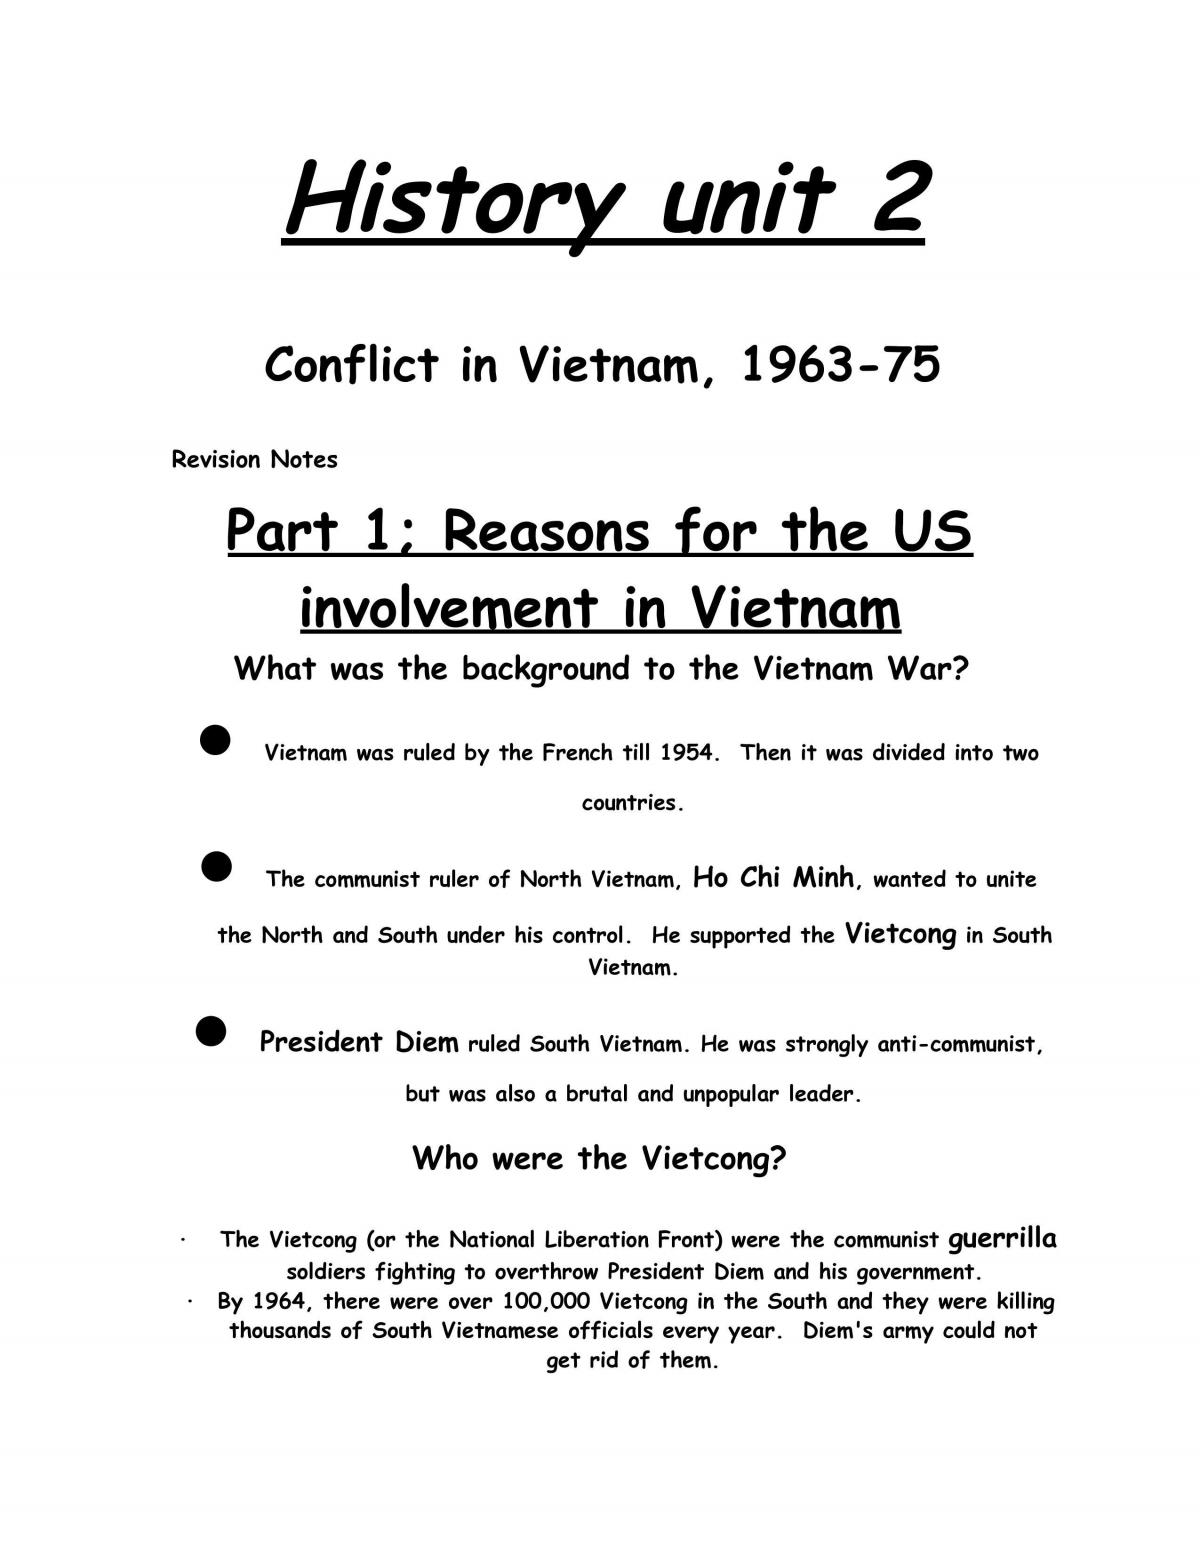 history paper 1 grade 12 vietnam essay